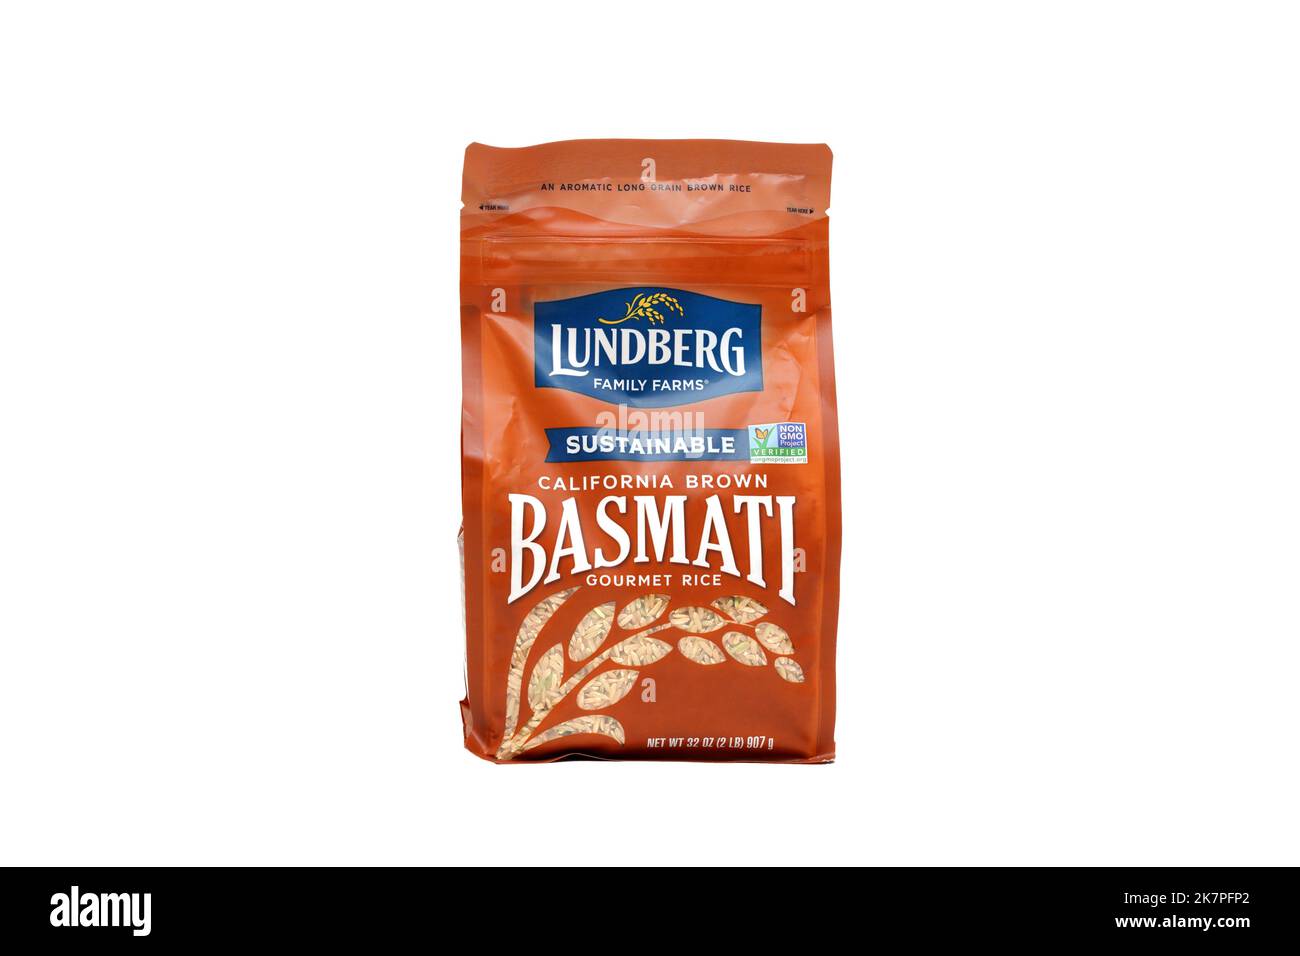 Un sac de riz basmati brun de Californie de la famille Lundberg Farms isolé sur fond blanc. image découpée pour illustration et usage éditorial. Banque D'Images